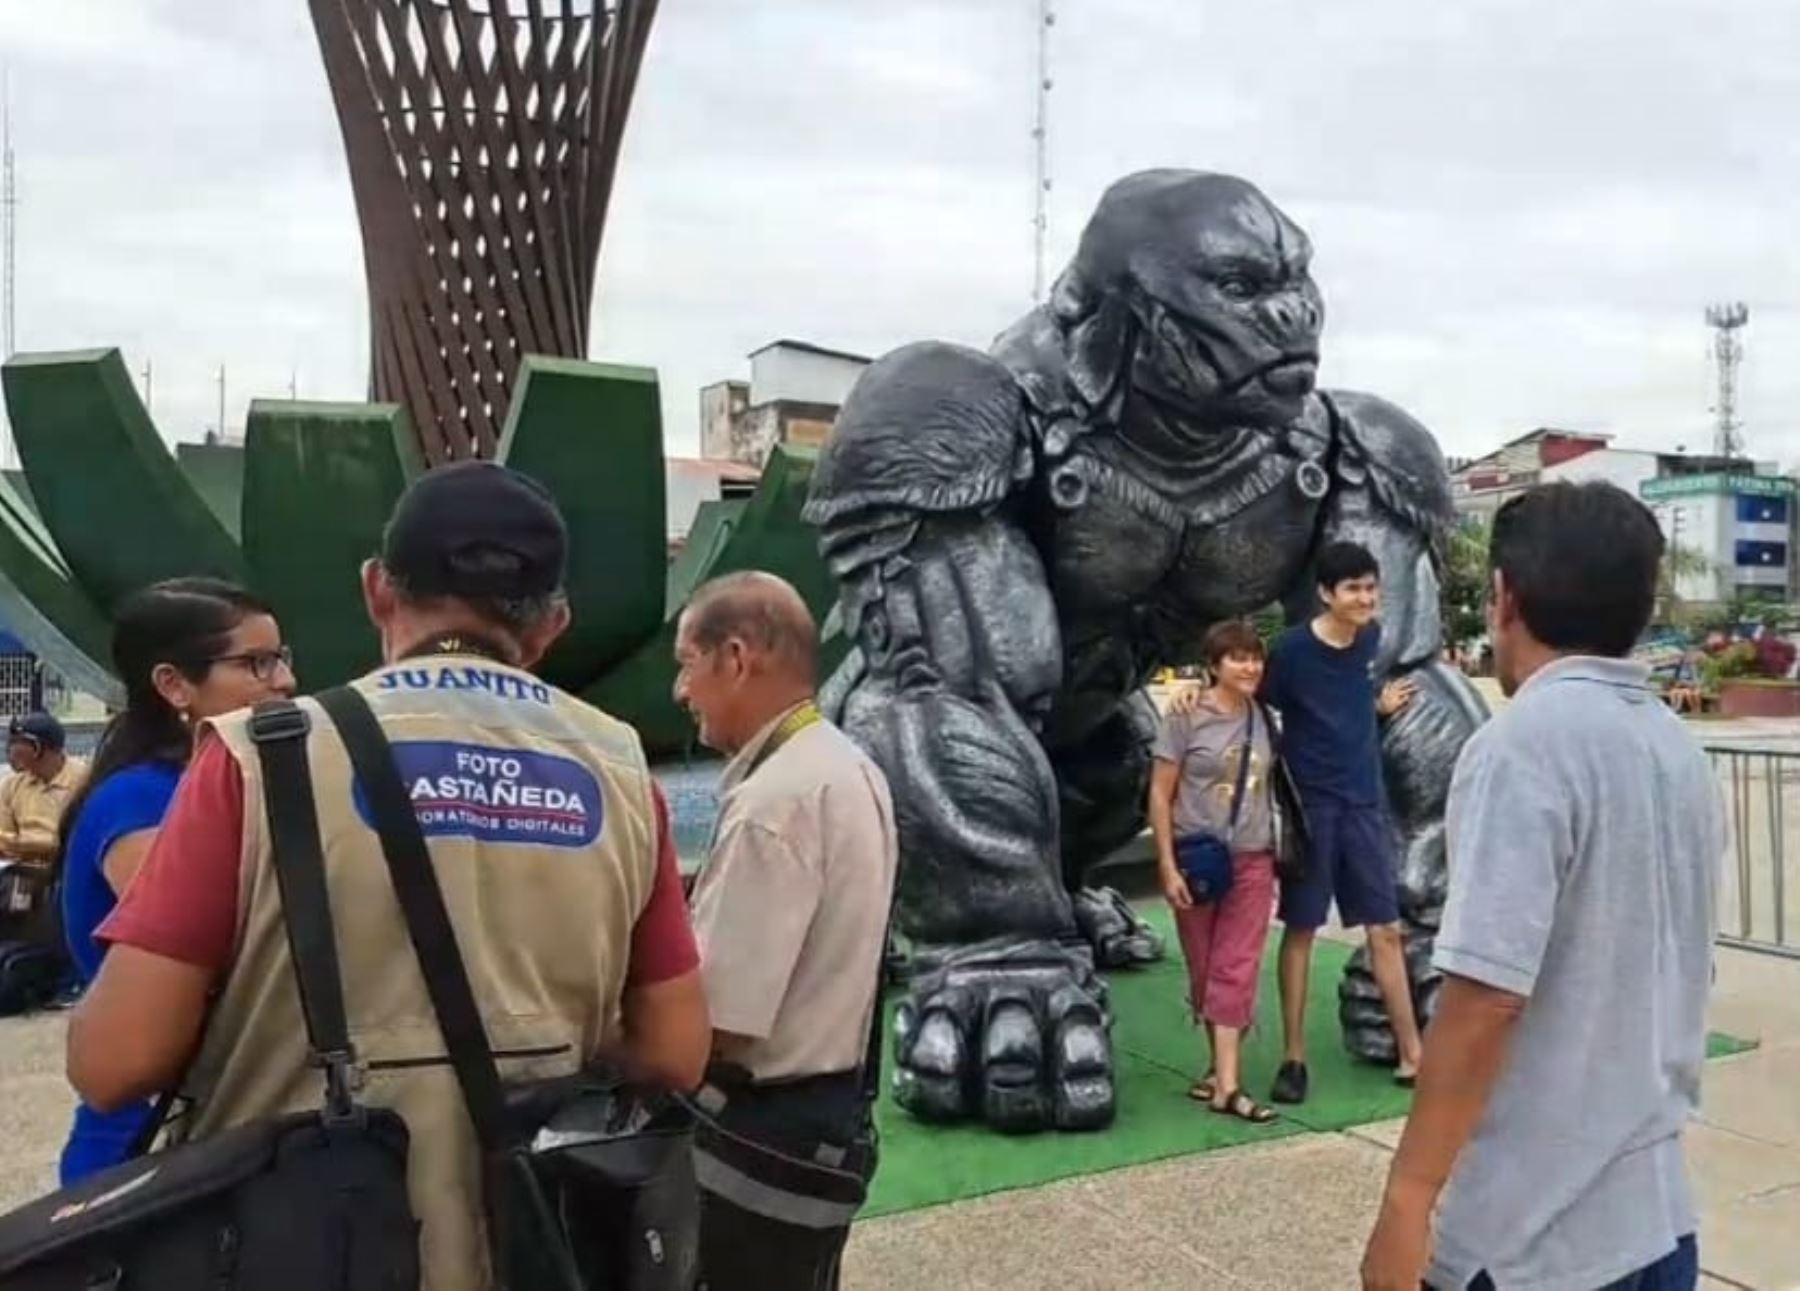 Una escultura de Optimus Primal, el personaje ficticio de la saga Los Transformers, fue instalada en la plaza de Armas de Tarapoto (San Martín) y causó sensación entre los pobladores y turistas que visitan esta ciudad. Foto: Jorge Quevedo